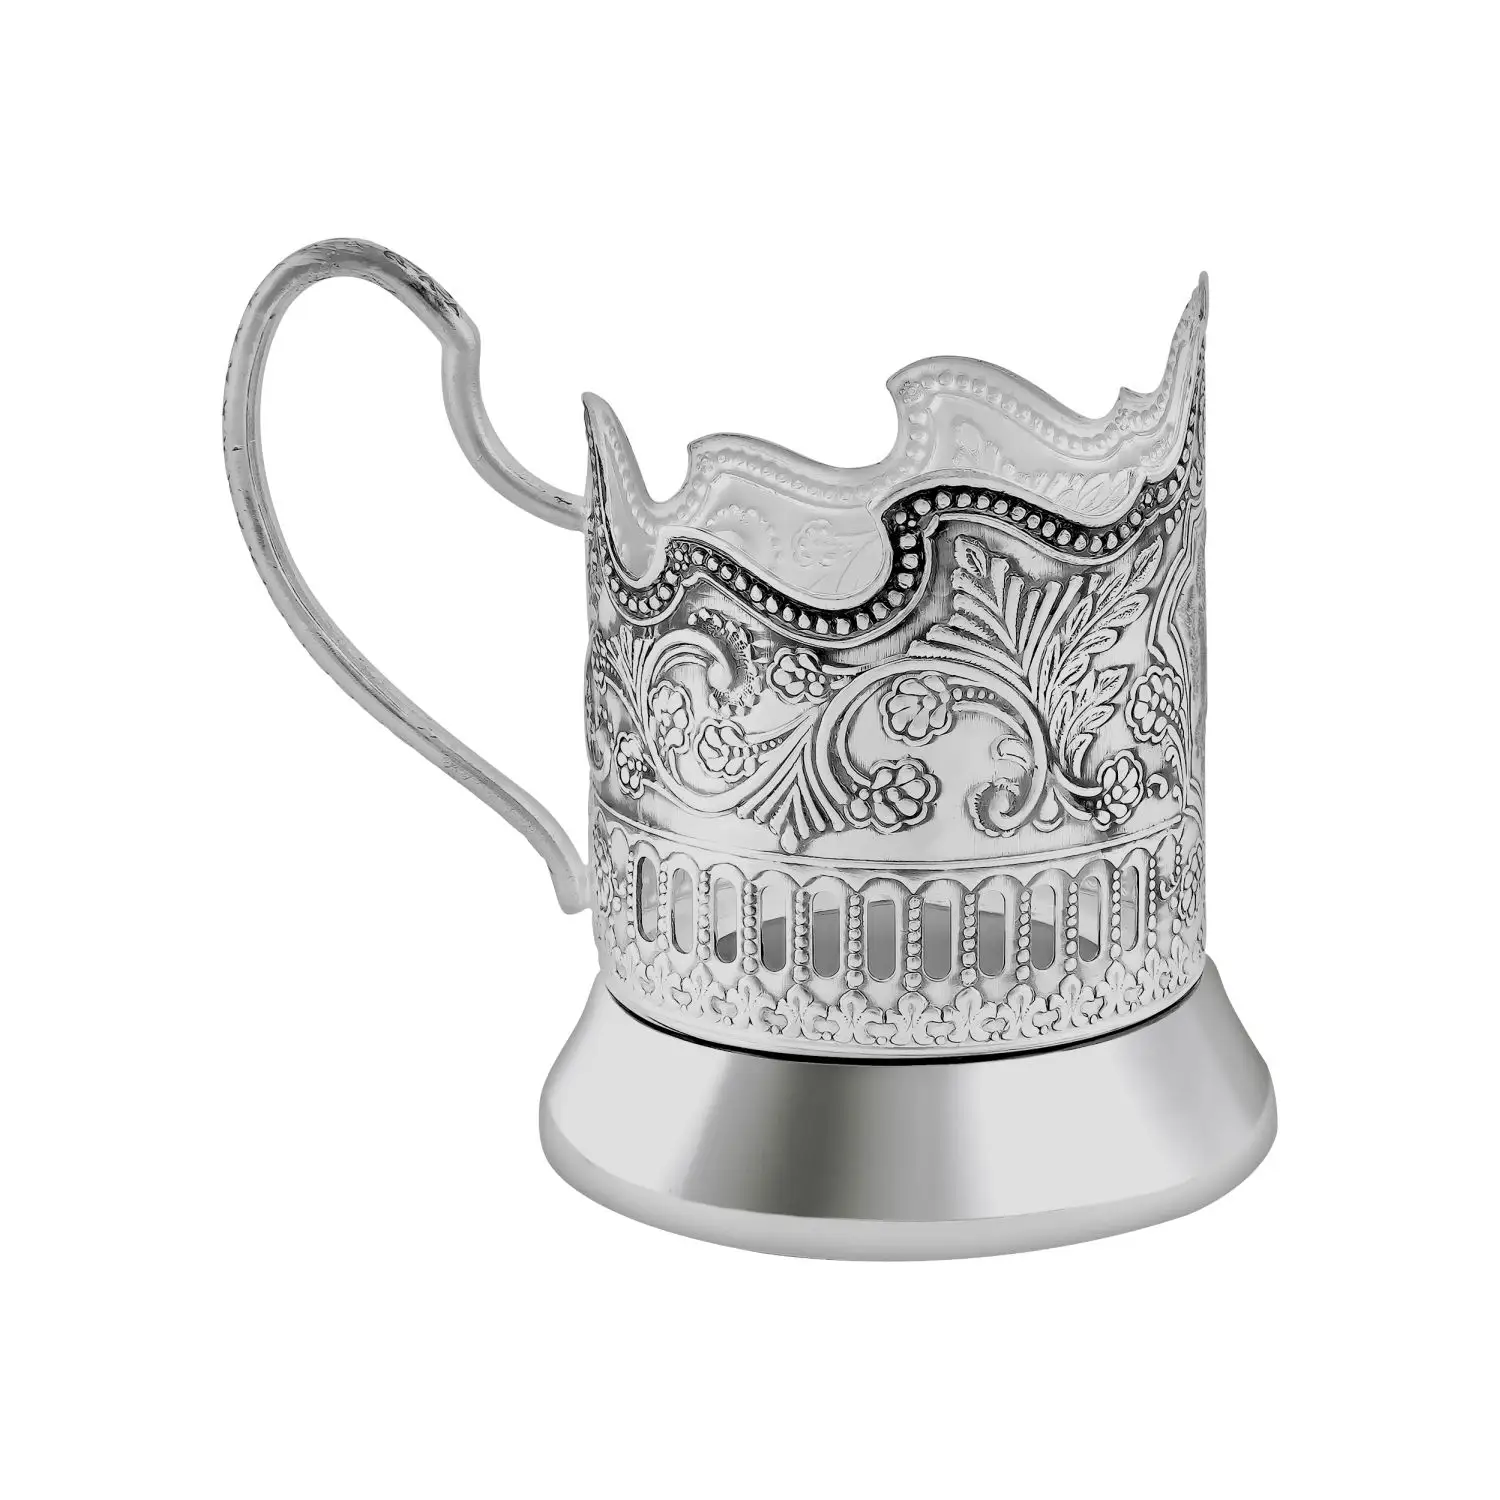 Набор для чая "Кольчугинские зори": ложка, стакан,подстаканник посеребренный